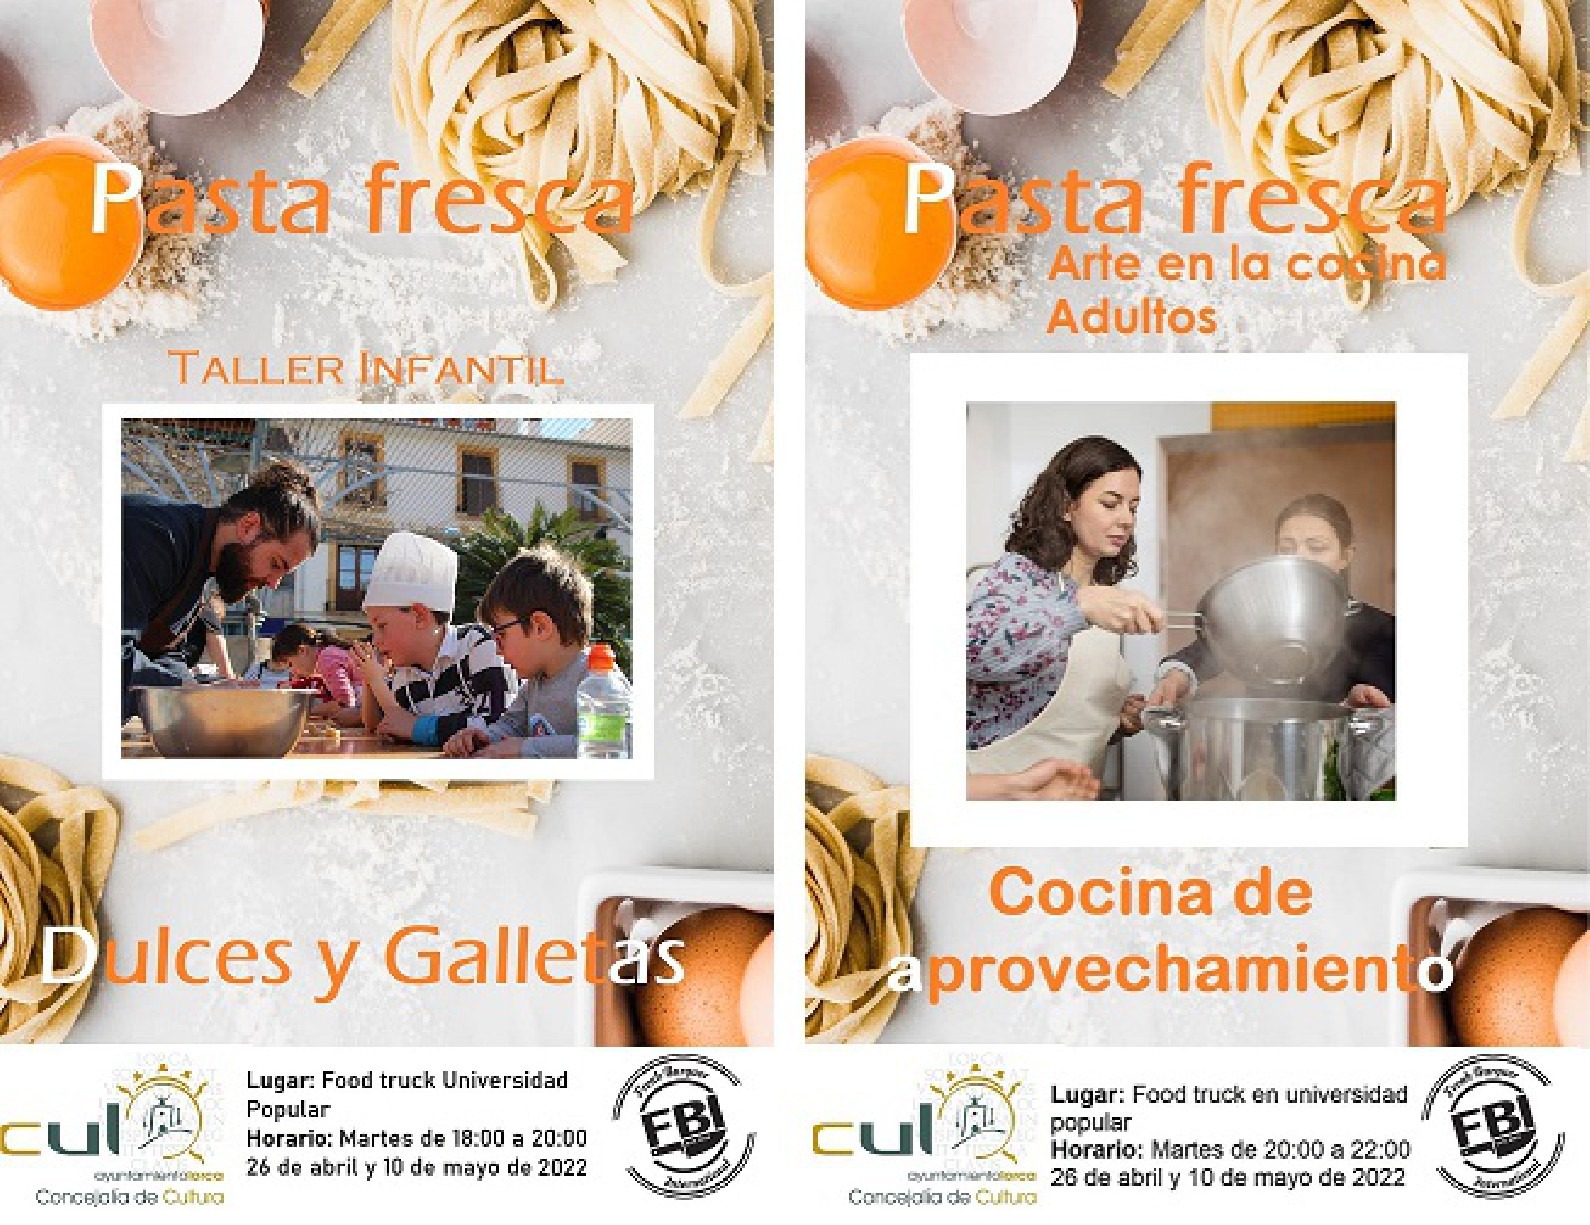 La Universidad Popular de Lorca y el restaurante FBI organizan los cursos ”Arte en la cocina, pasta creativa y cocina de aprovechamiento” y ”Arte en la cocina infantil”